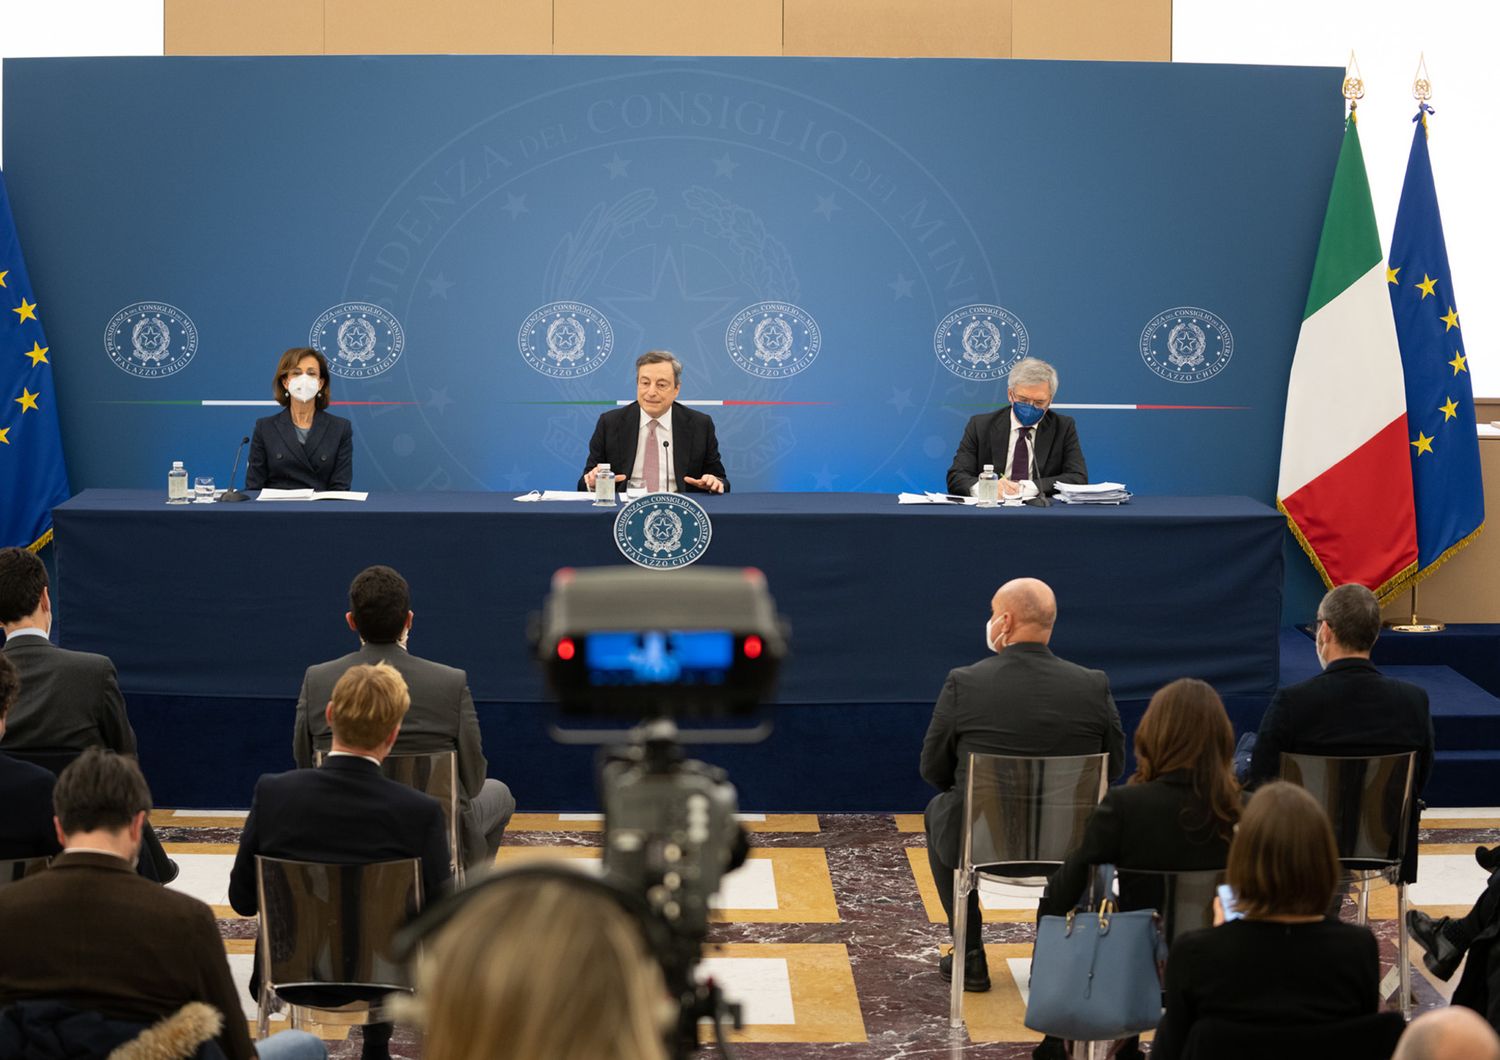 La conferenza stampa del premier Mario Draghi insieme ai ministri Marta Cartabia e Daniele Franco